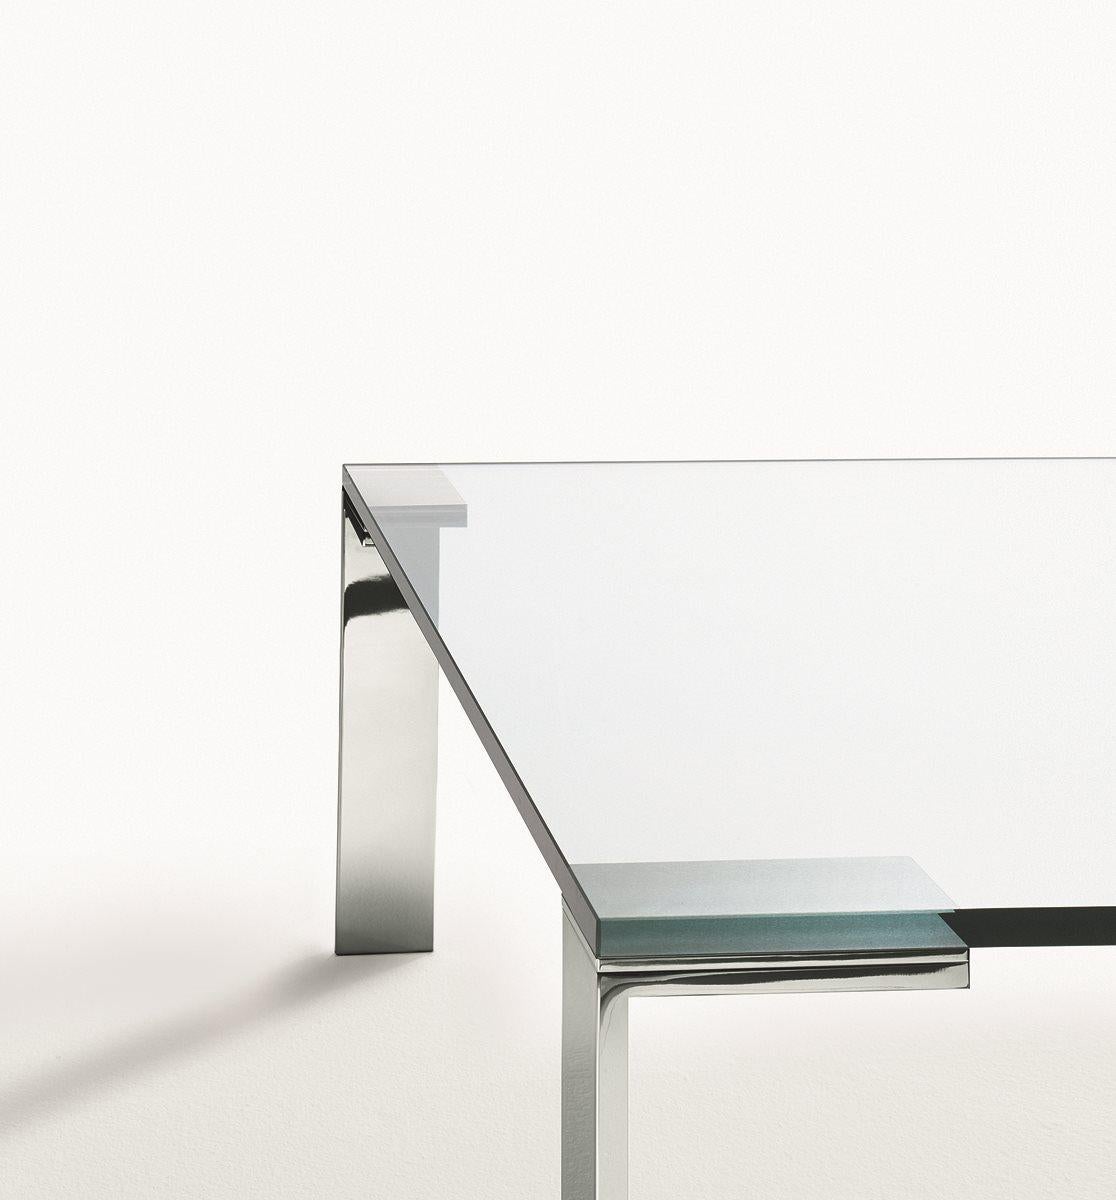 Verre Liko conçu par Arik Levy 
La légèreté du verre crée un effet mimétique et joue un rôle prépondérant dans toute situation résidentielle ou d'AM Contemporary contemporaine. Le verre Liko est, comme toujours, parfait dans n'importe quel contexte.